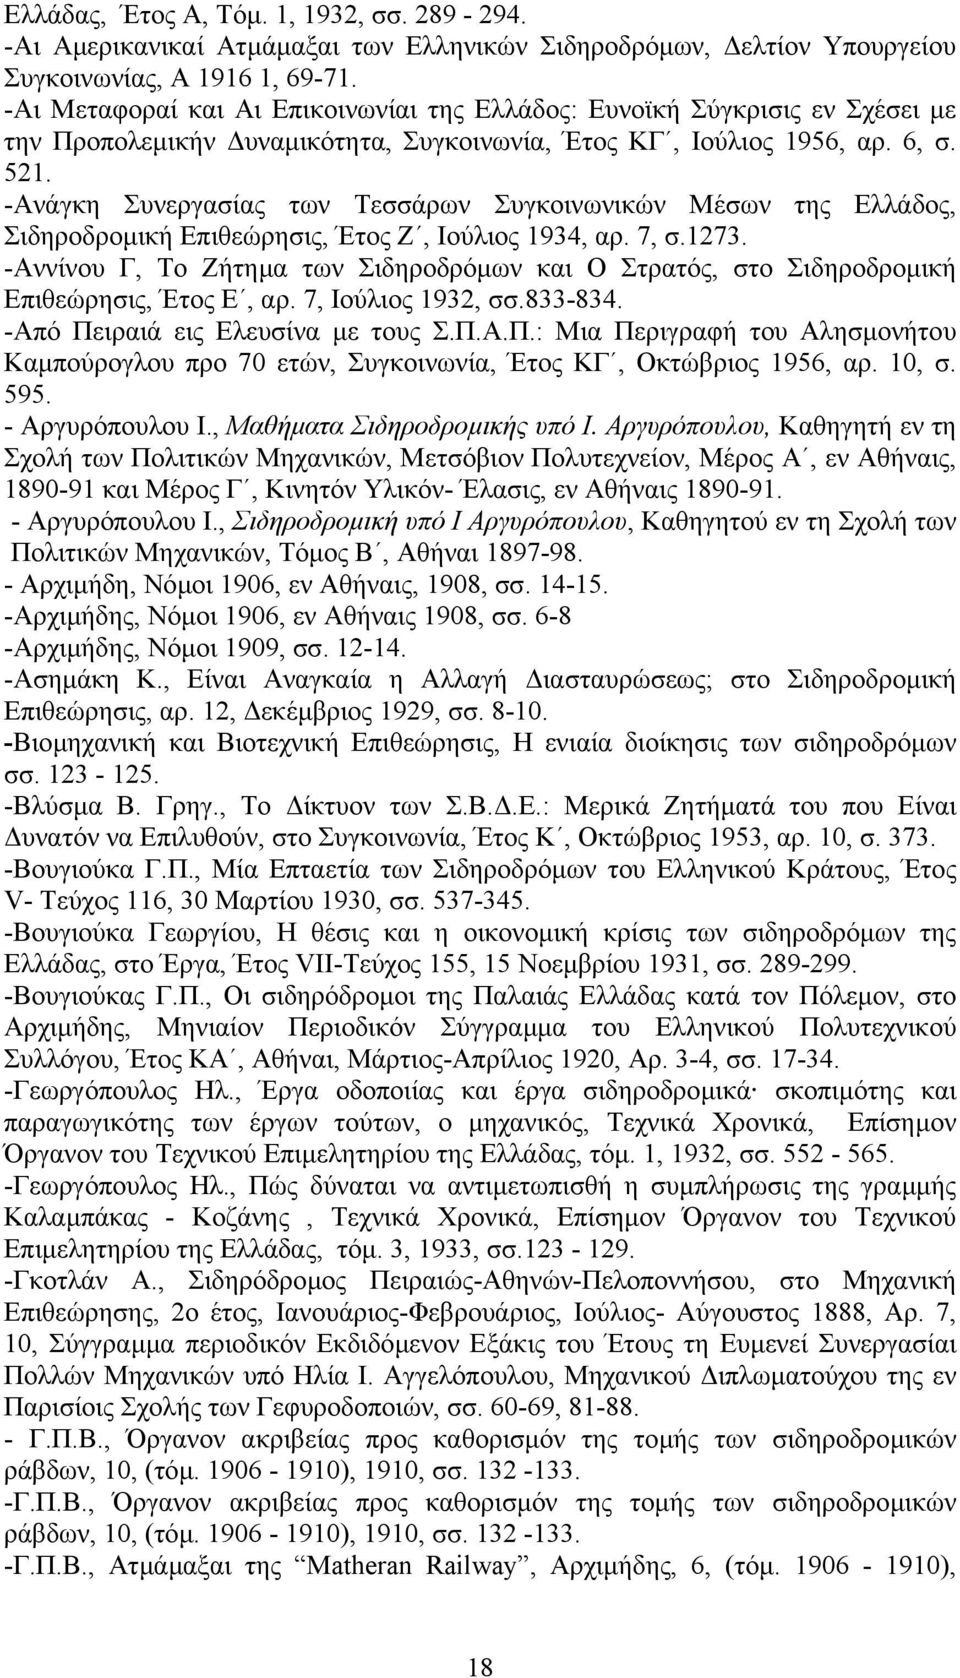 -Ανάγκη Συνεργασίας των Τεσσάρων Συγκοινωνικών Μέσων της Ελλάδος, Σιδηροδροµική Επιθεώρησις, Έτος Ζ, Ιούλιος 1934, αρ. 7, σ.1273.